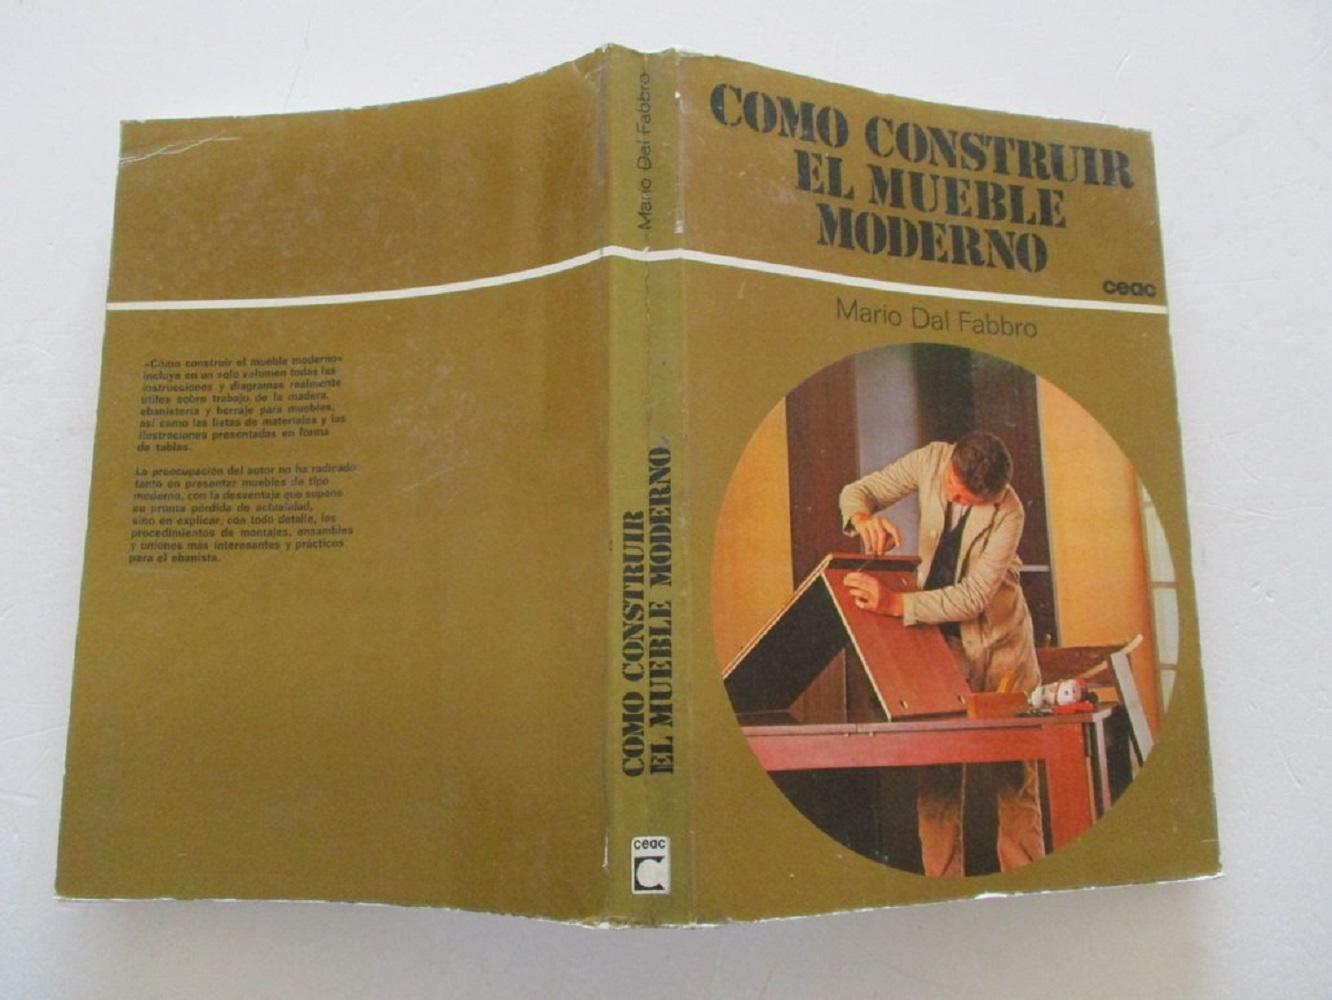 Libro Cómo construir el mueble moderno por Mario Dal Fabbro